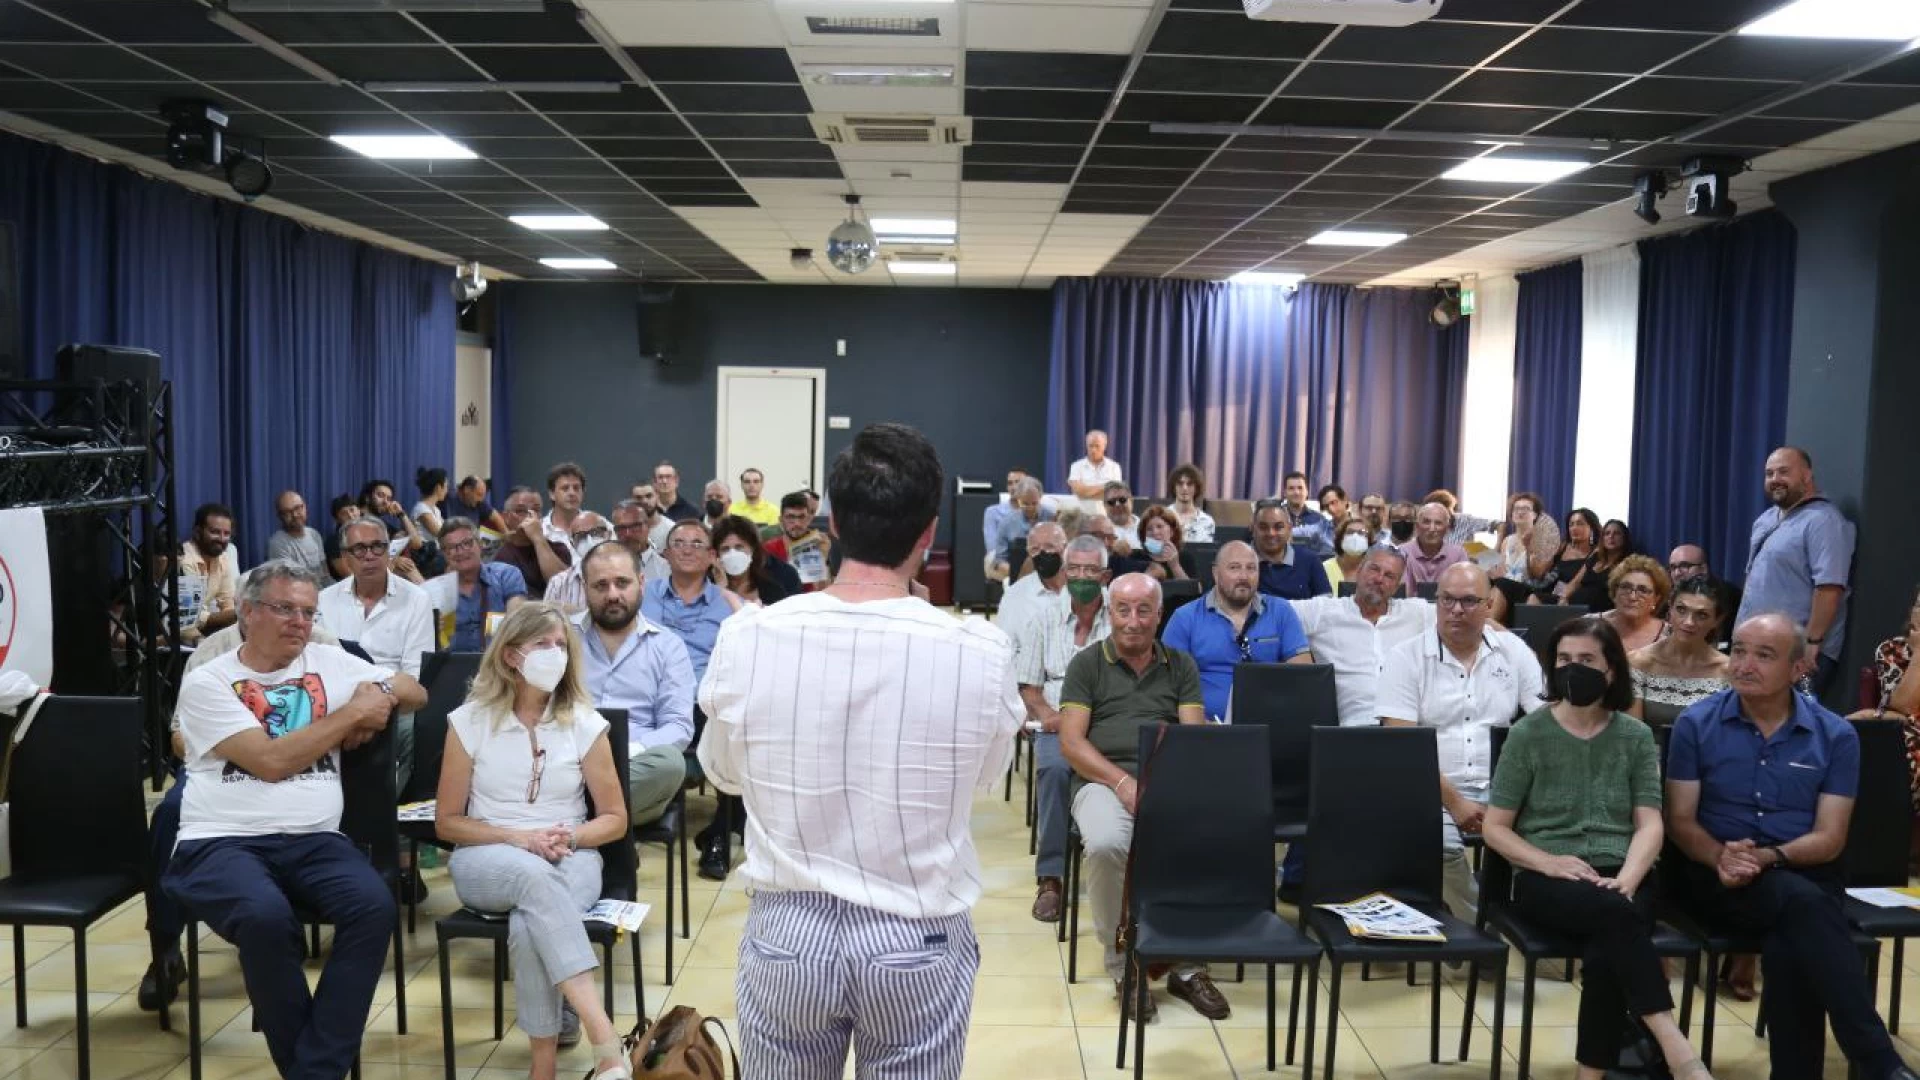 Politica: sabato a Termoli si è svolta l’assemblea regionale del M5S. Portavoce e attivisti insieme: “Portare a termine l’agenda sociale”.